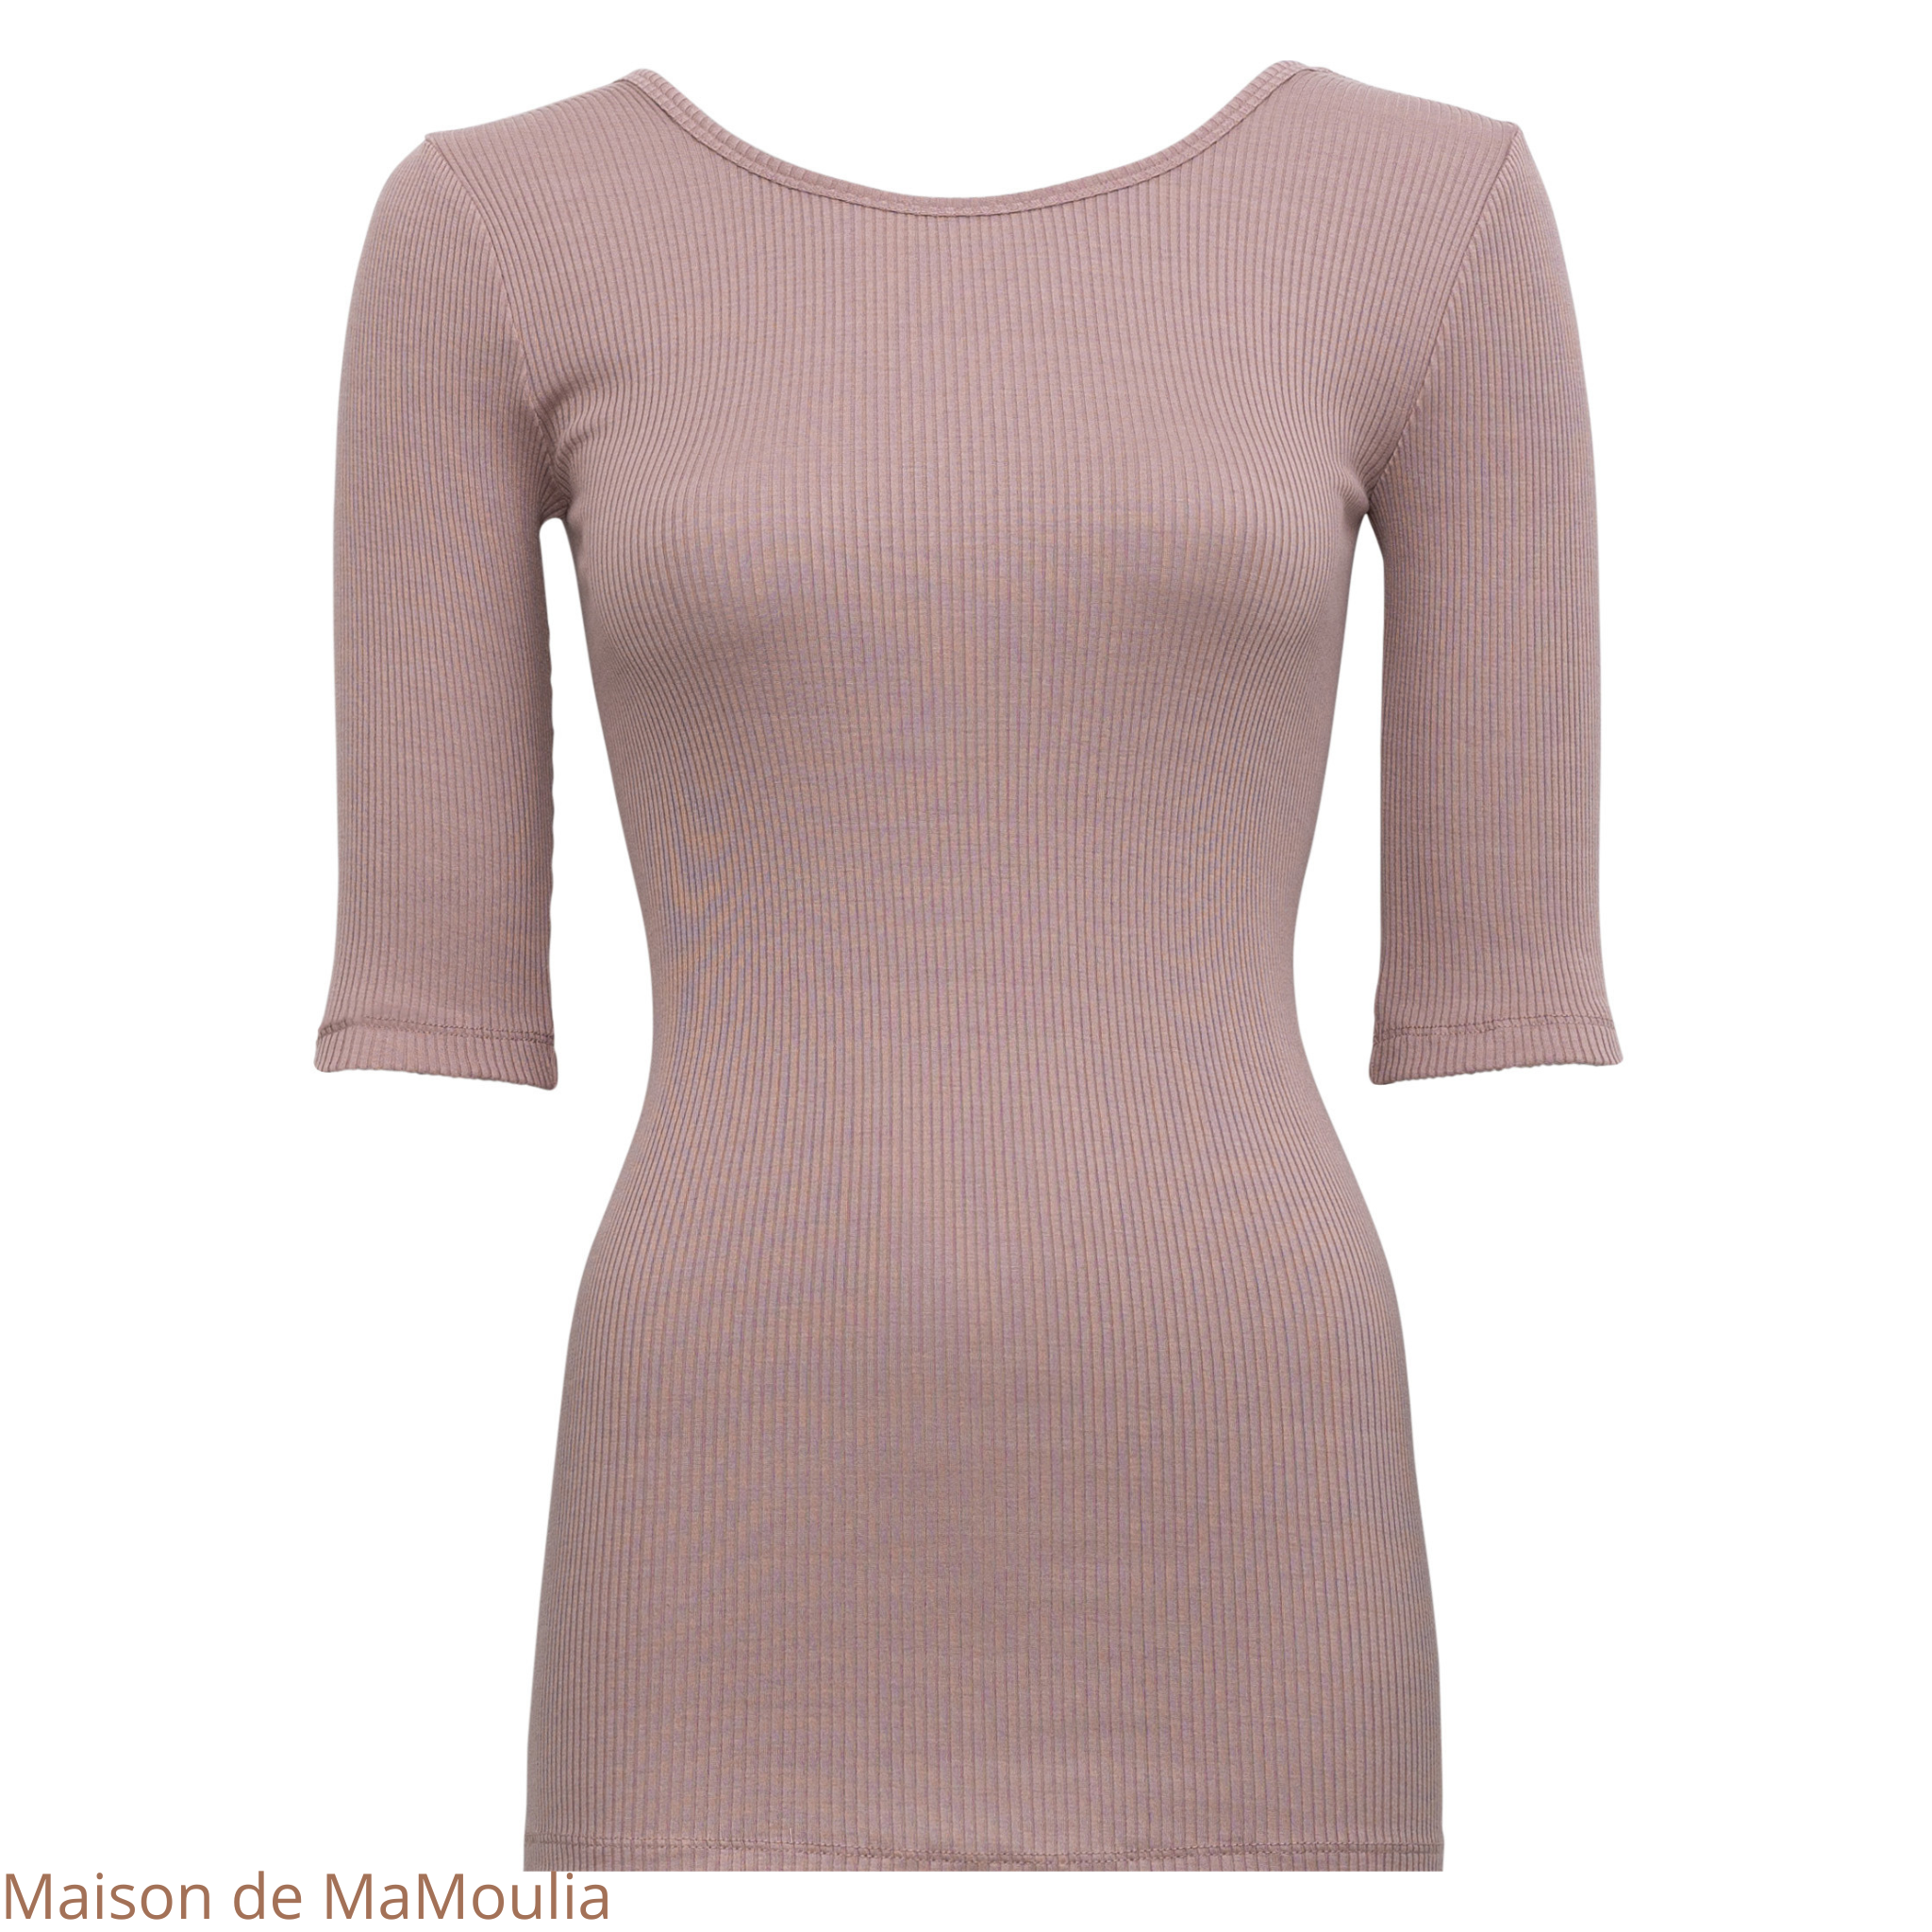 minimalisma-gym- tshirt-top-manches-courtes-34-soie-coton-femme-maison-de-mamoulia - dusty-rose